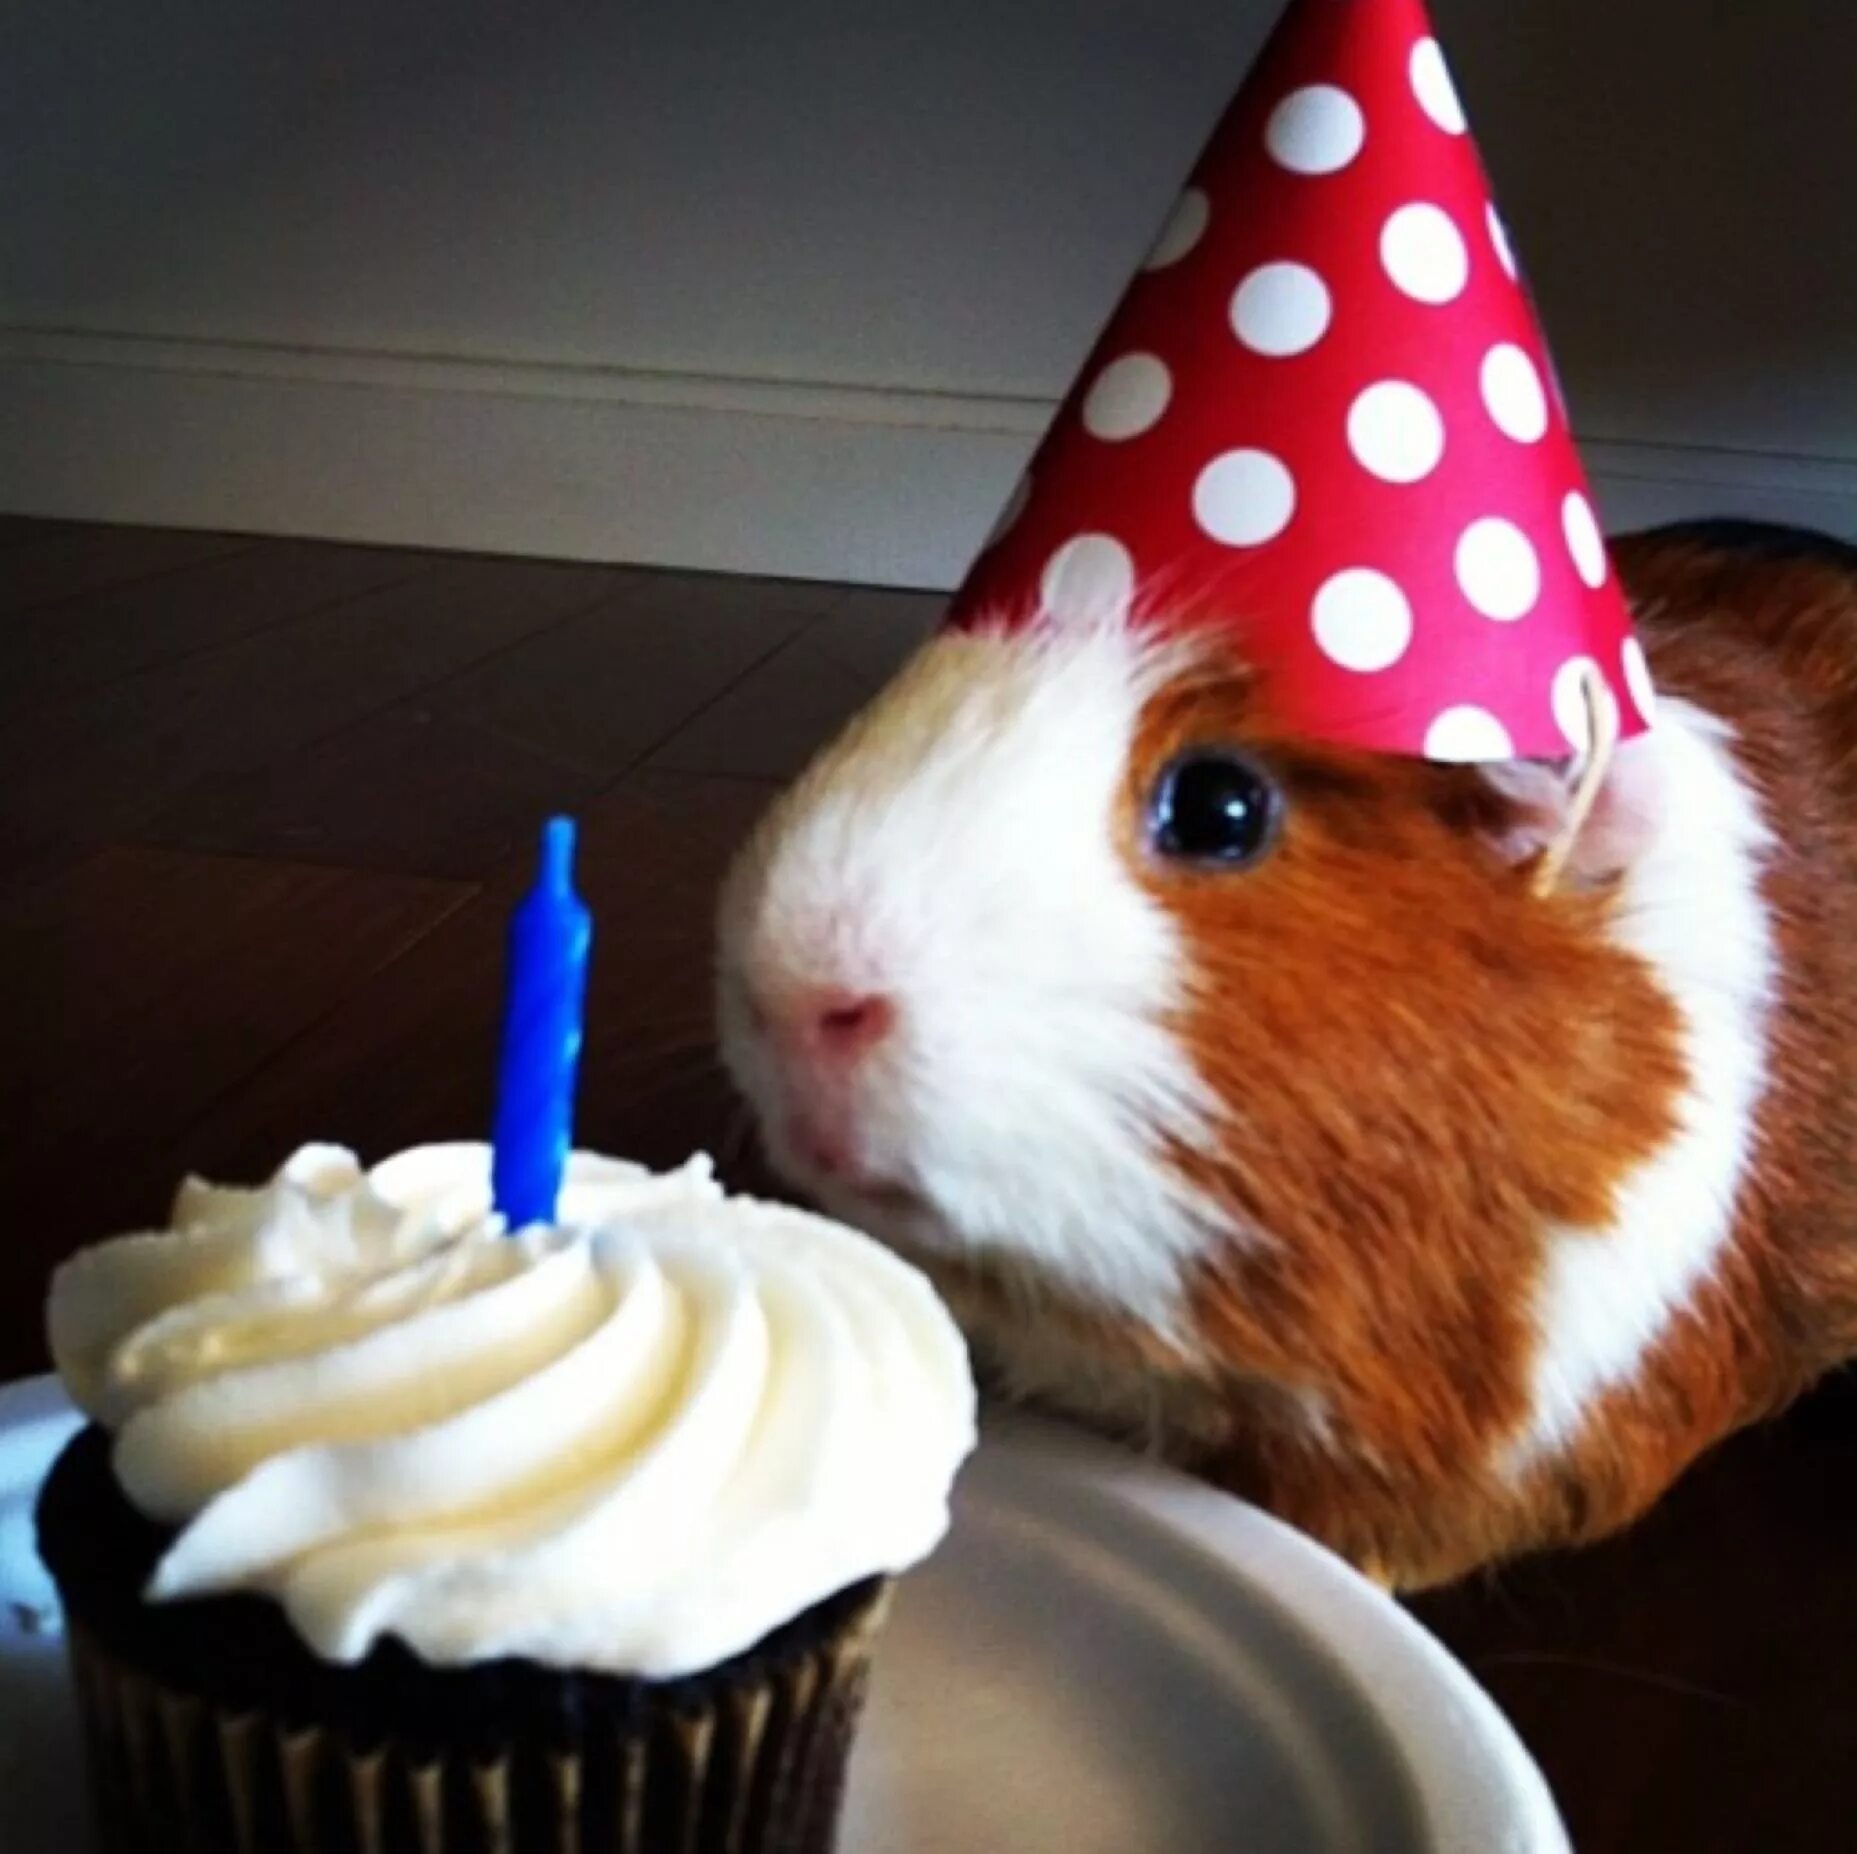 Звери на дне рождении. С днём рождения с животными. Животные поздравляют с днем рождения. Хомяк в колпаке. Морская Свинка в праздничном колпаке.